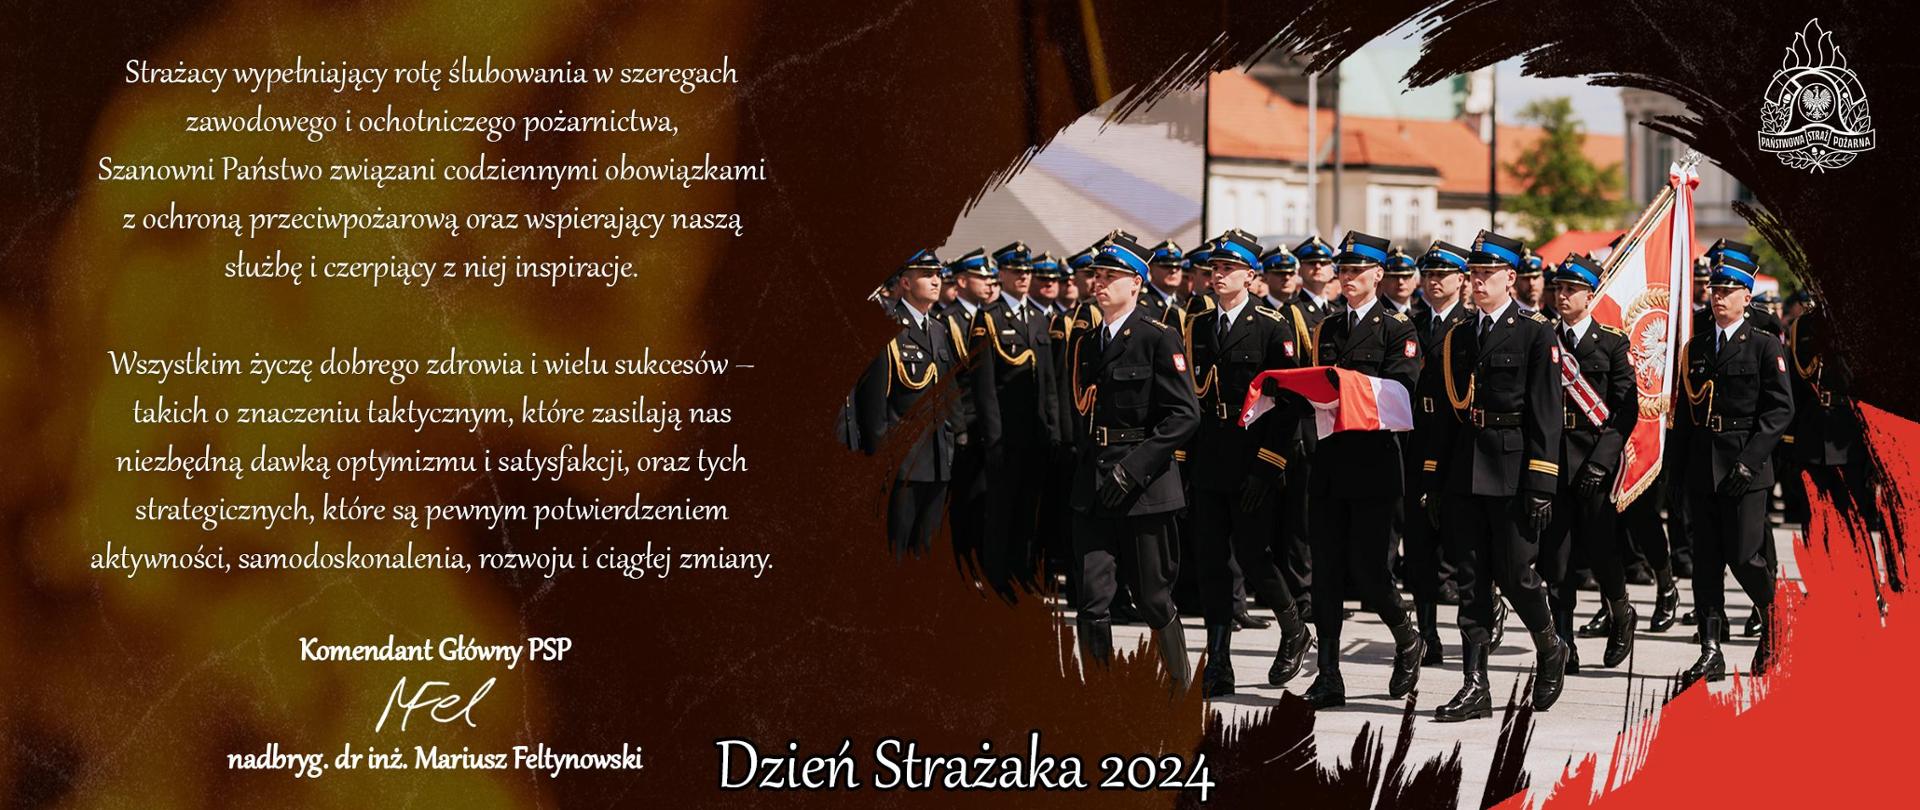 Dzień Strażaka 2024 - życzenia KG PSP z okazji Dnia Strażaka